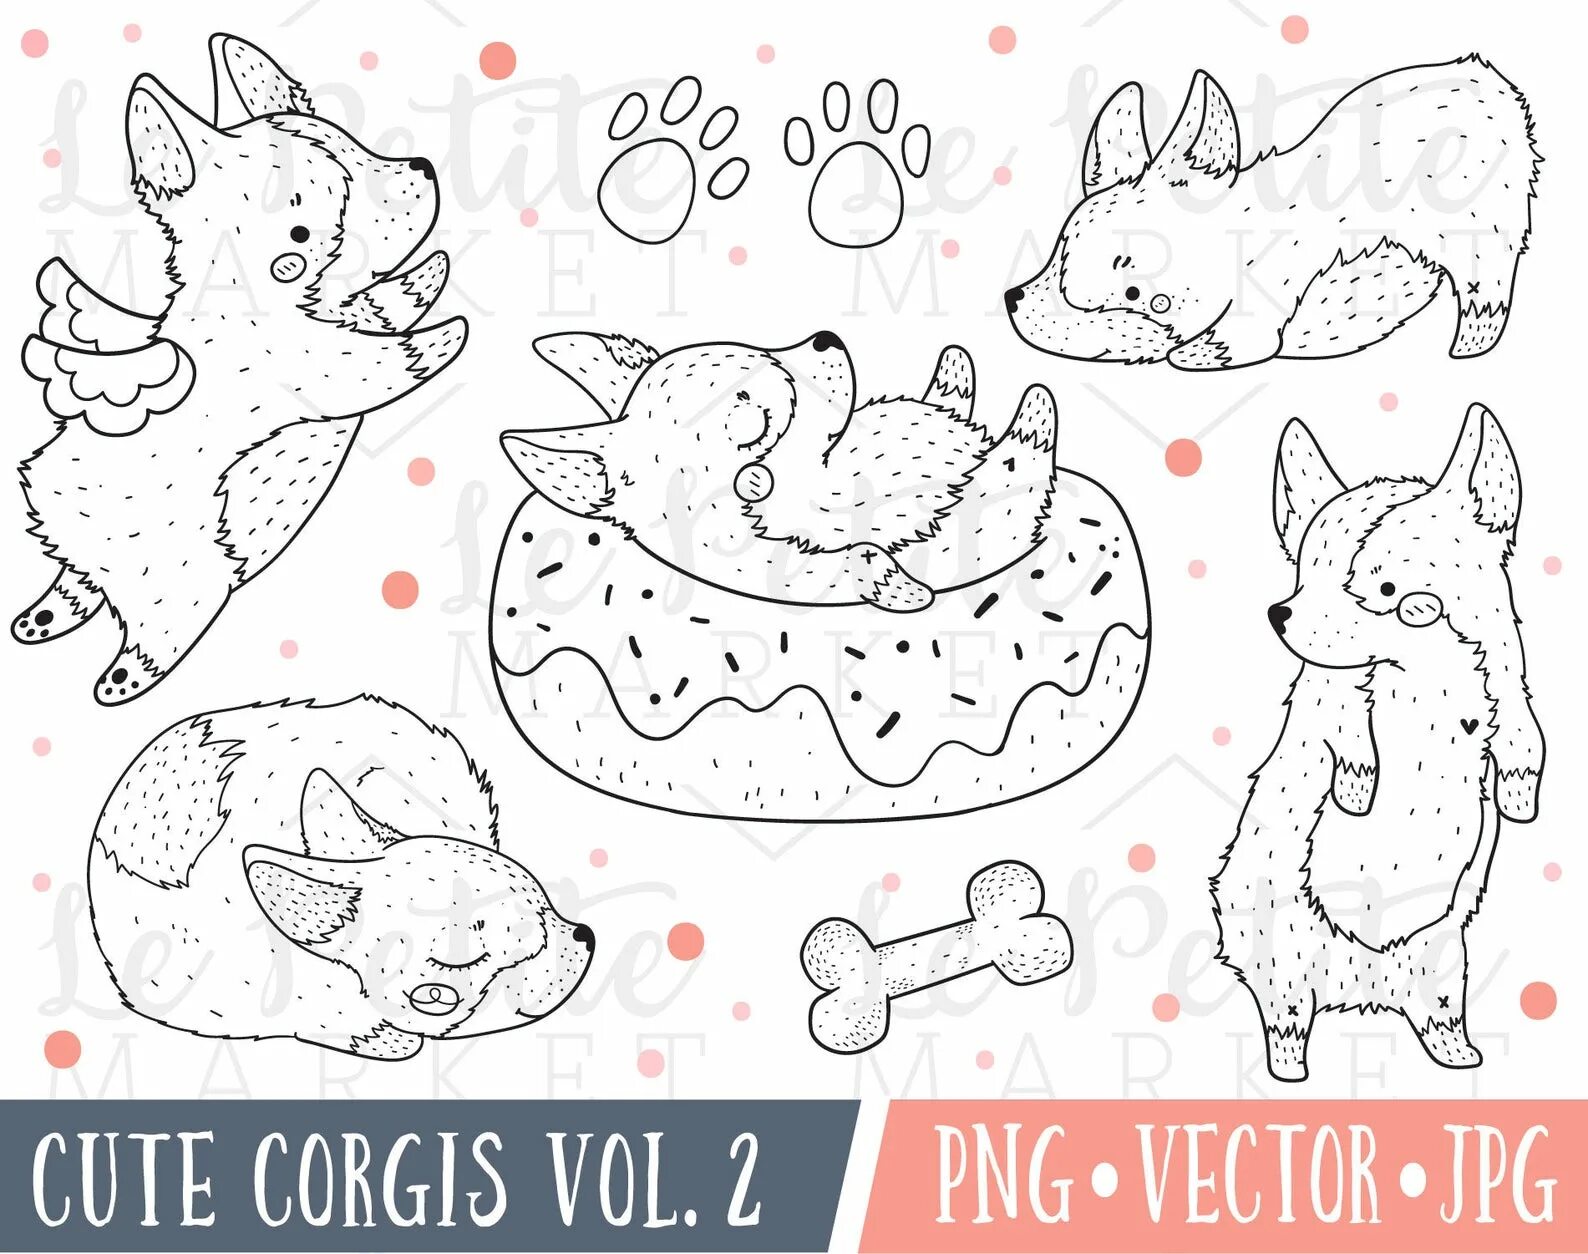 Corgi cuties #8